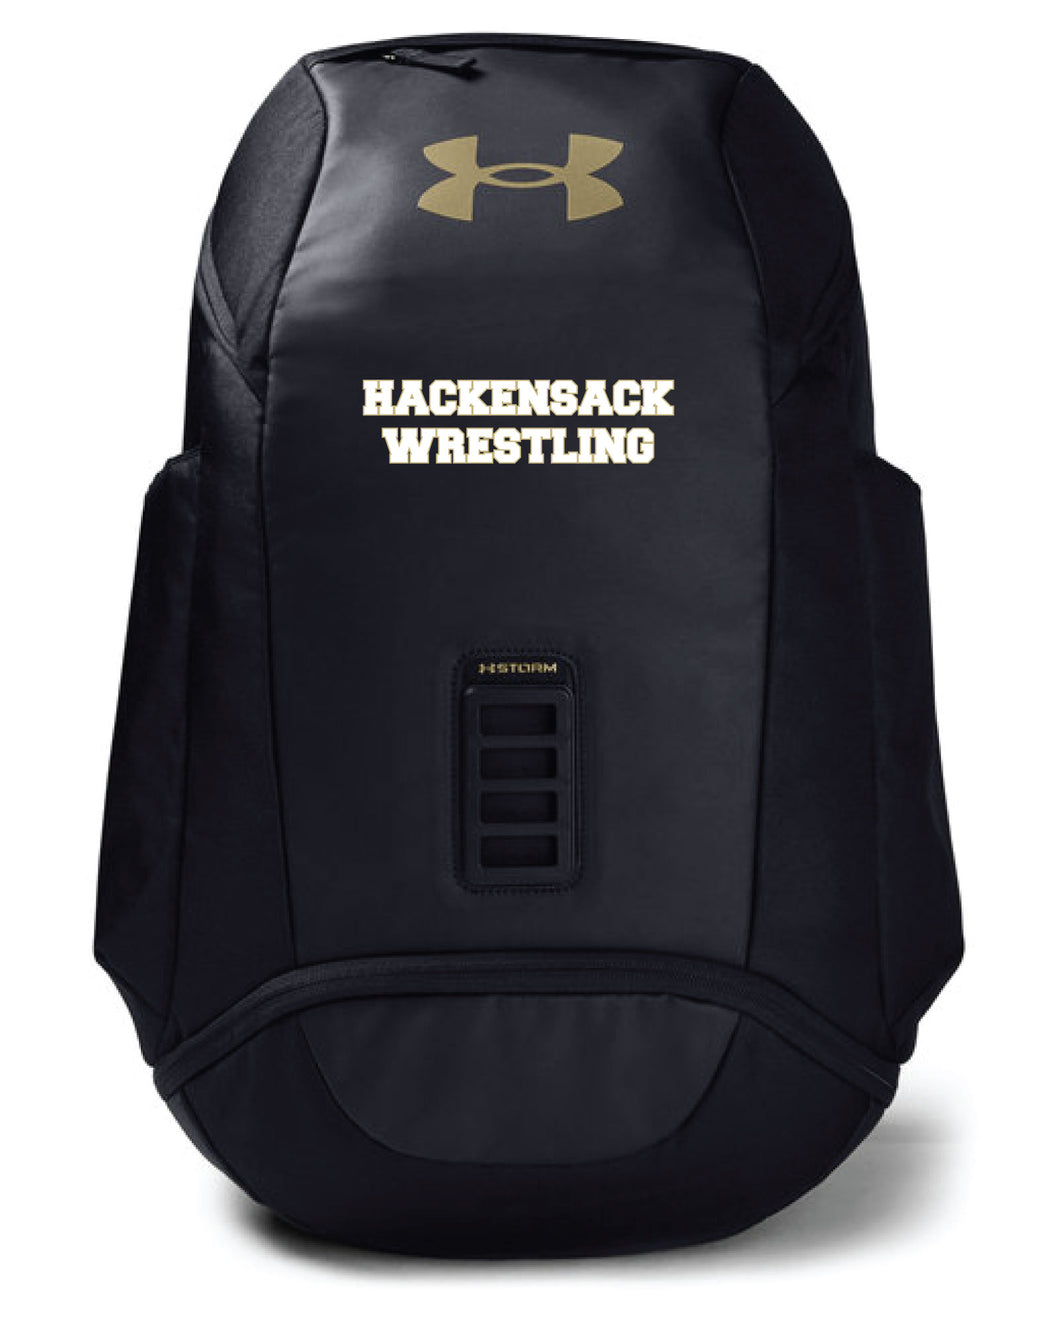 Hackensack Wrestling Under Armour Backpack - Black